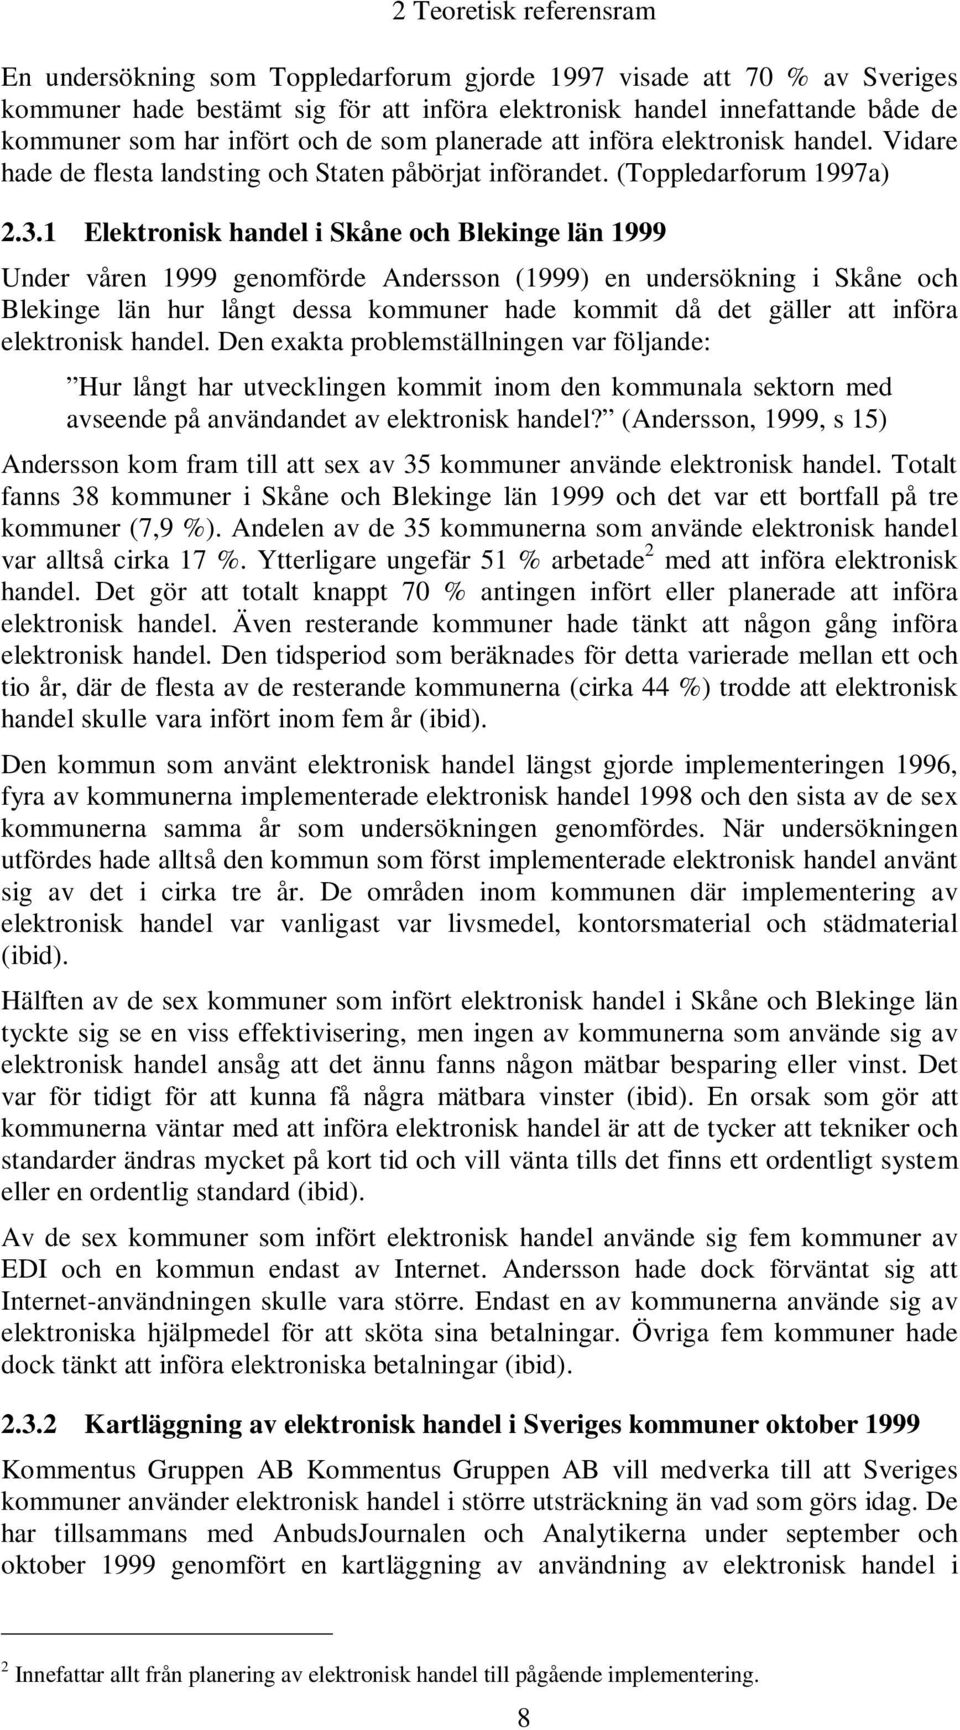 1 Elektronisk handel i Skåne och Blekinge län 1999 Under våren 1999 genomförde Andersson (1999) en undersökning i Skåne och Blekinge län hur långt dessa kommuner hade kommit då det gäller att införa